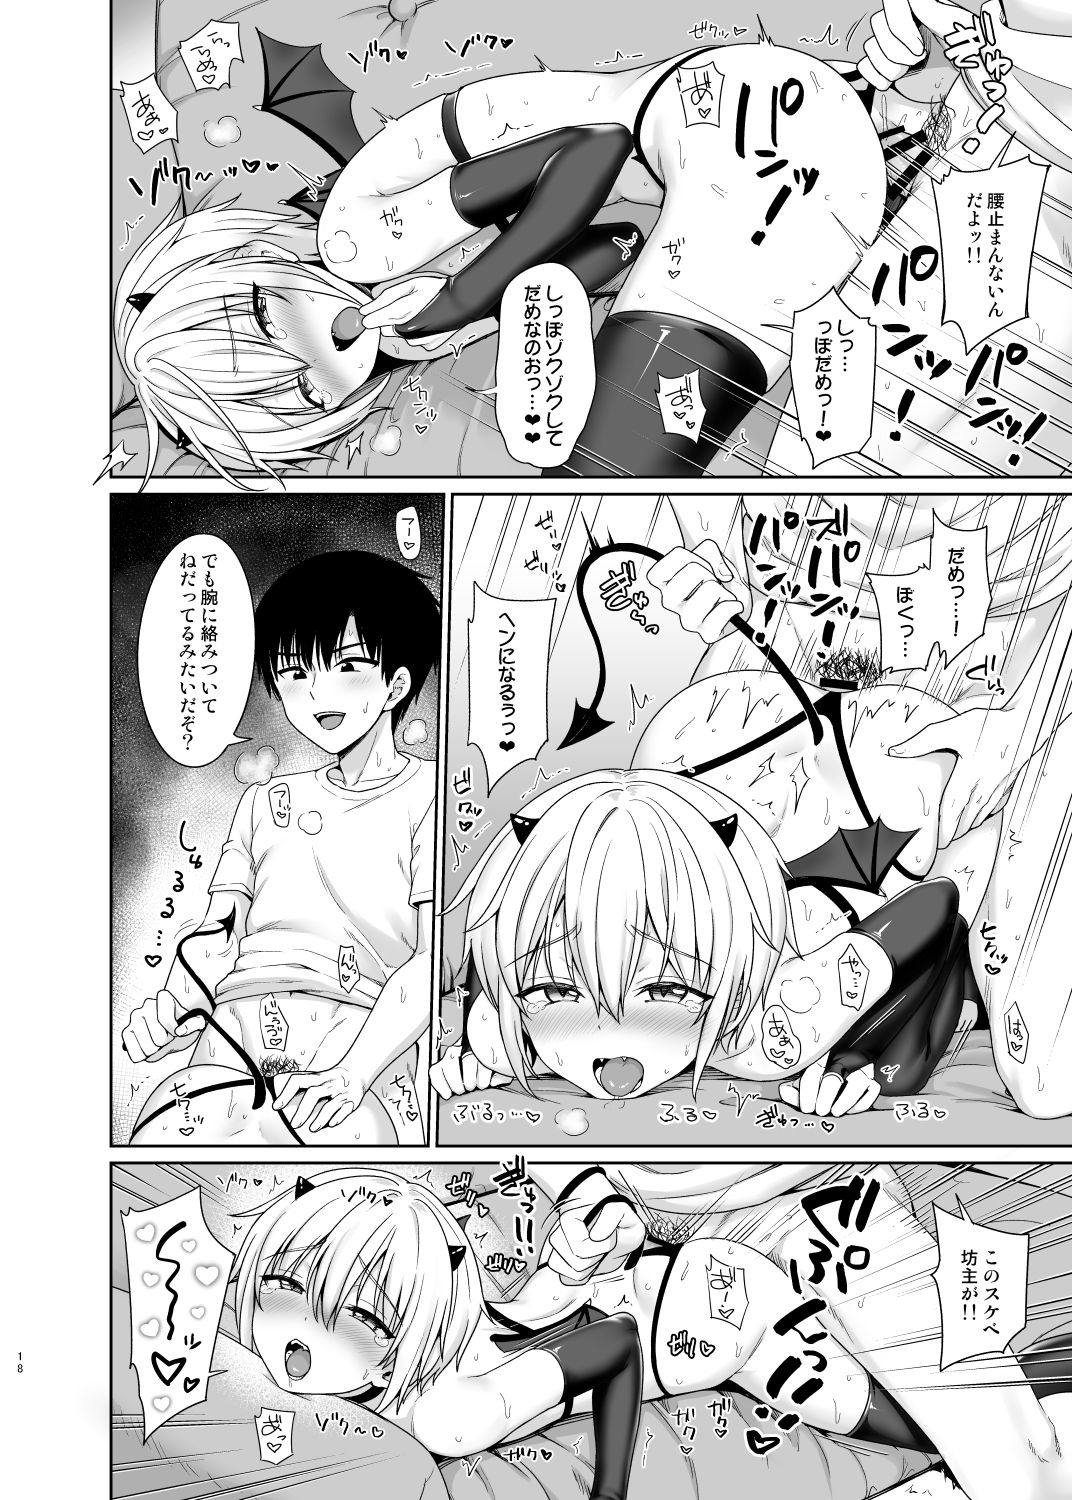 [Toitoikai (Toitoi)] Succubus-kun to no Seikatsu 1 - Life with the Succubus boy. [Digital] page 19 full